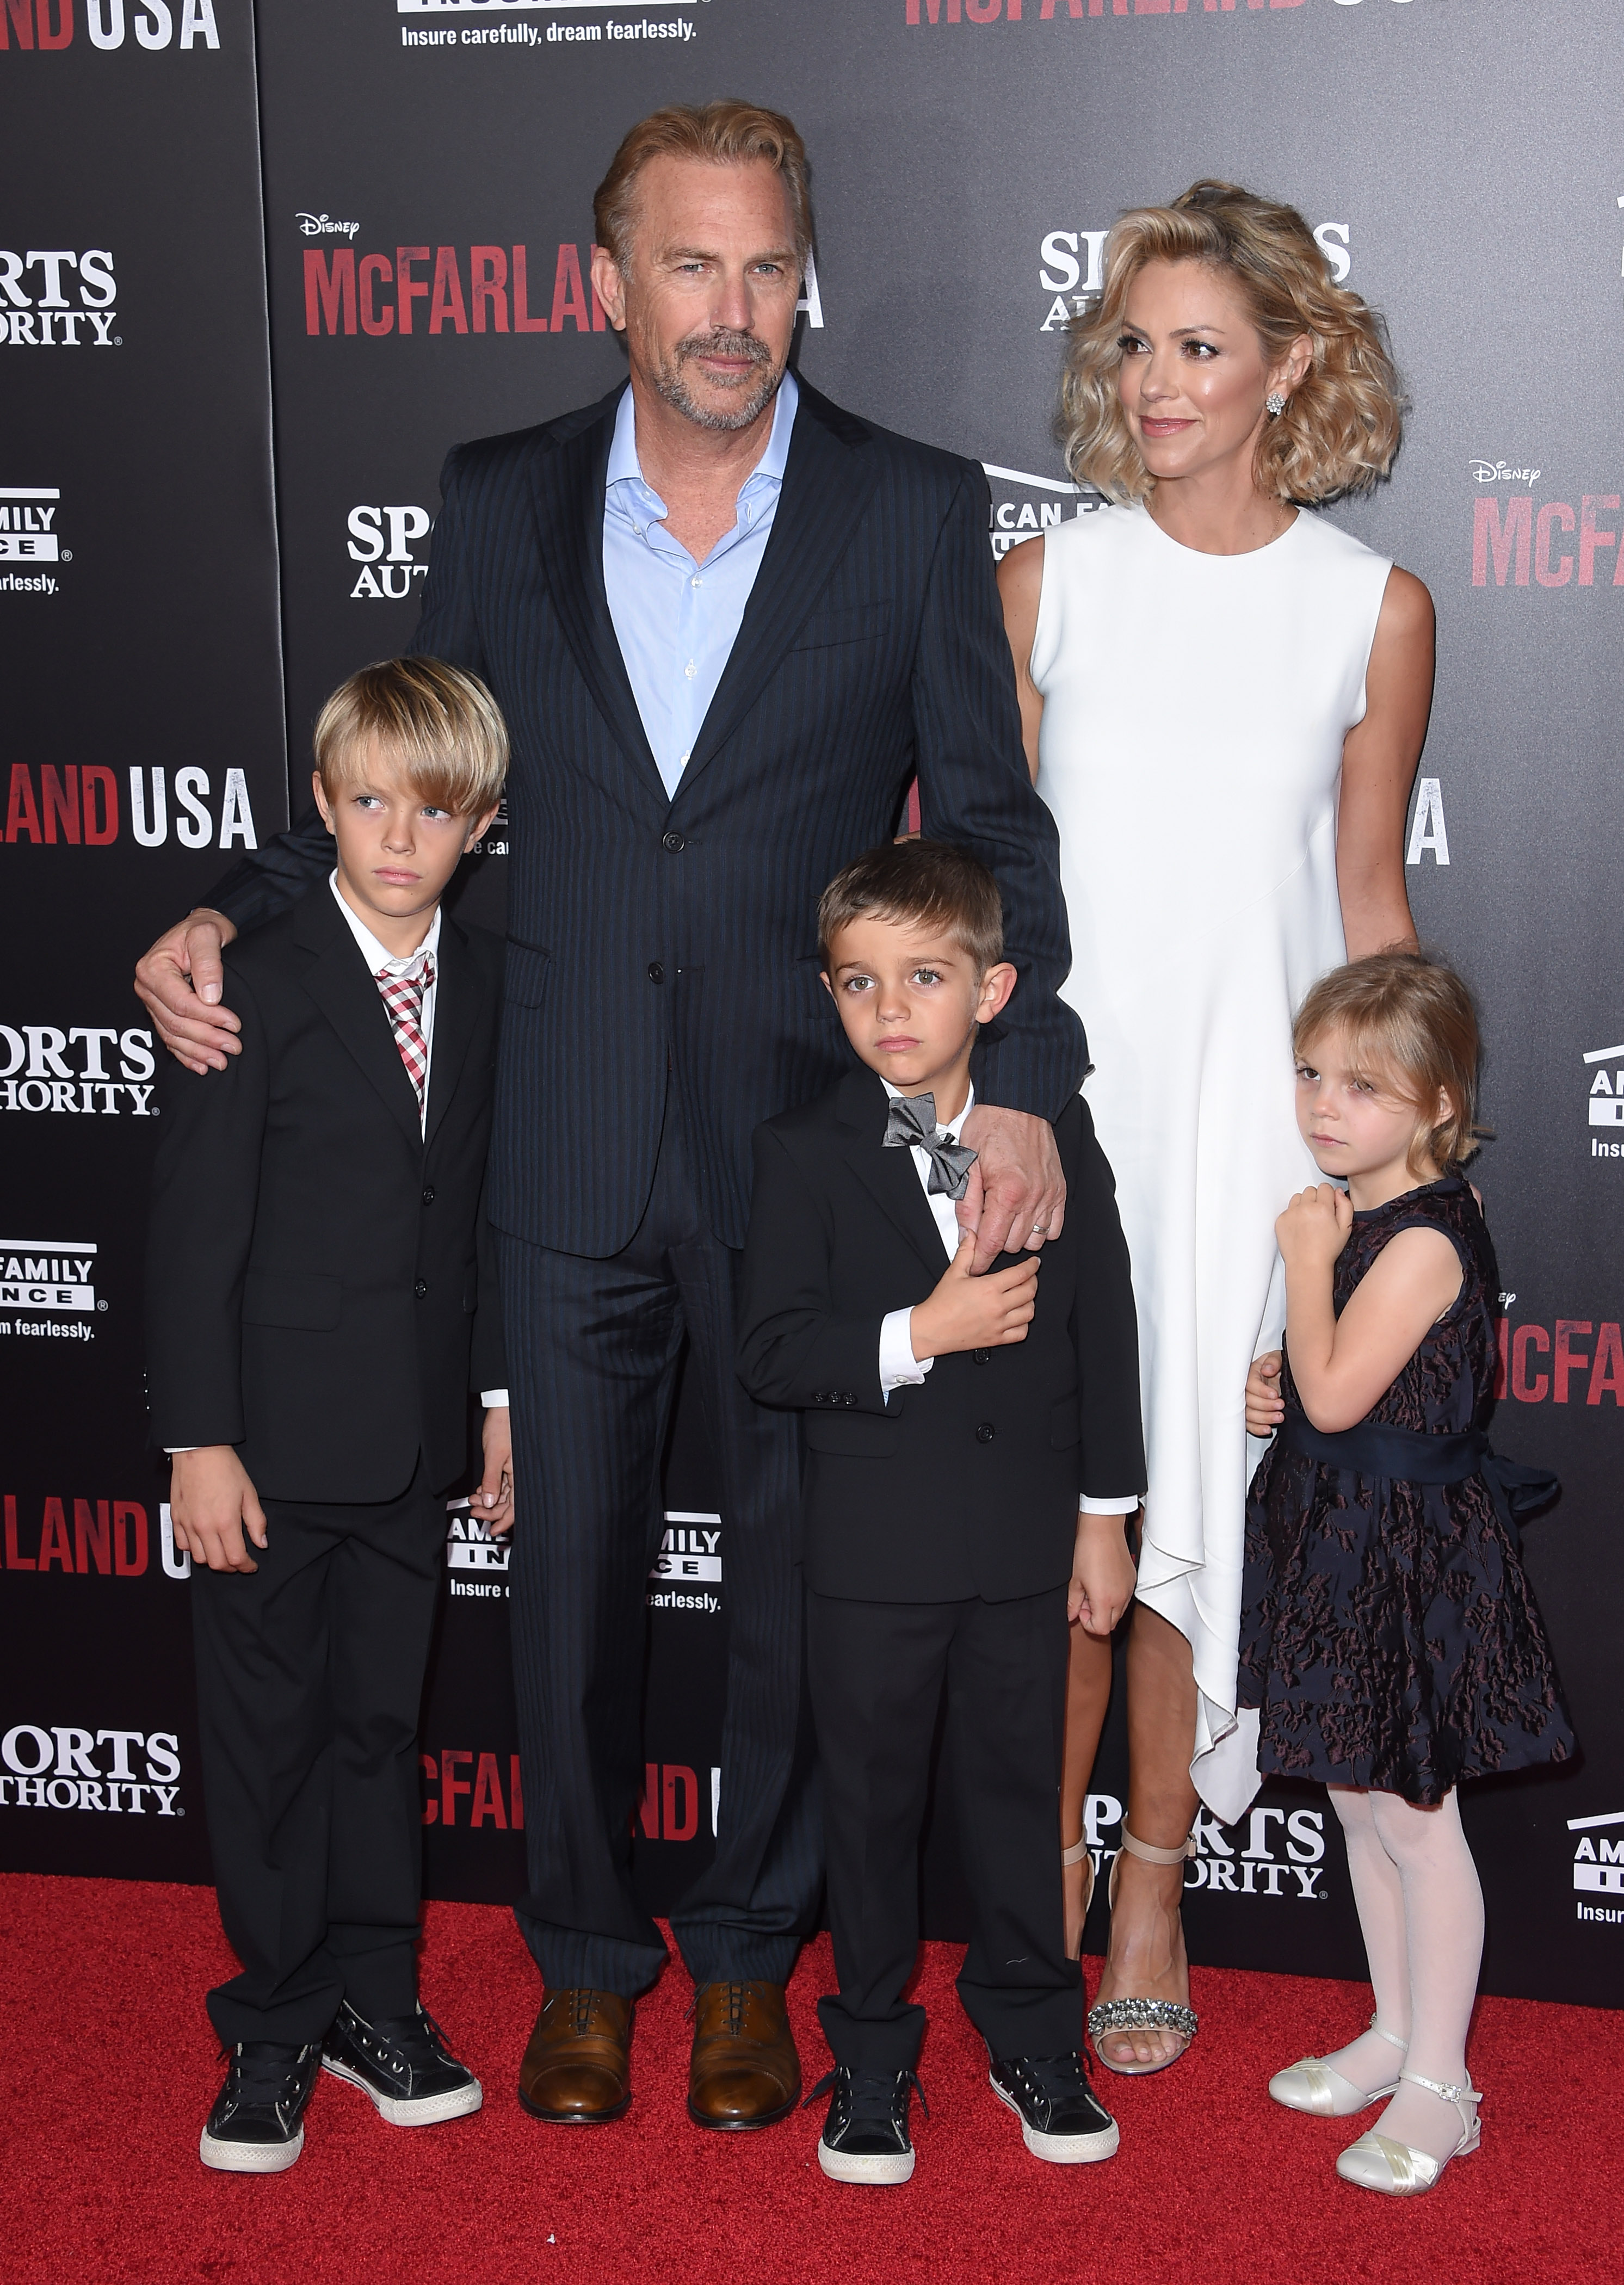 Kevin Costner und Christine Baumgartner mit ihren Kindern Cayden, Hayes und Grace Costner bei der Premiere von "McFarland, USA" in Hollywood, Kalifornien am 9. Februar 2015 | Quelle: Getty Images